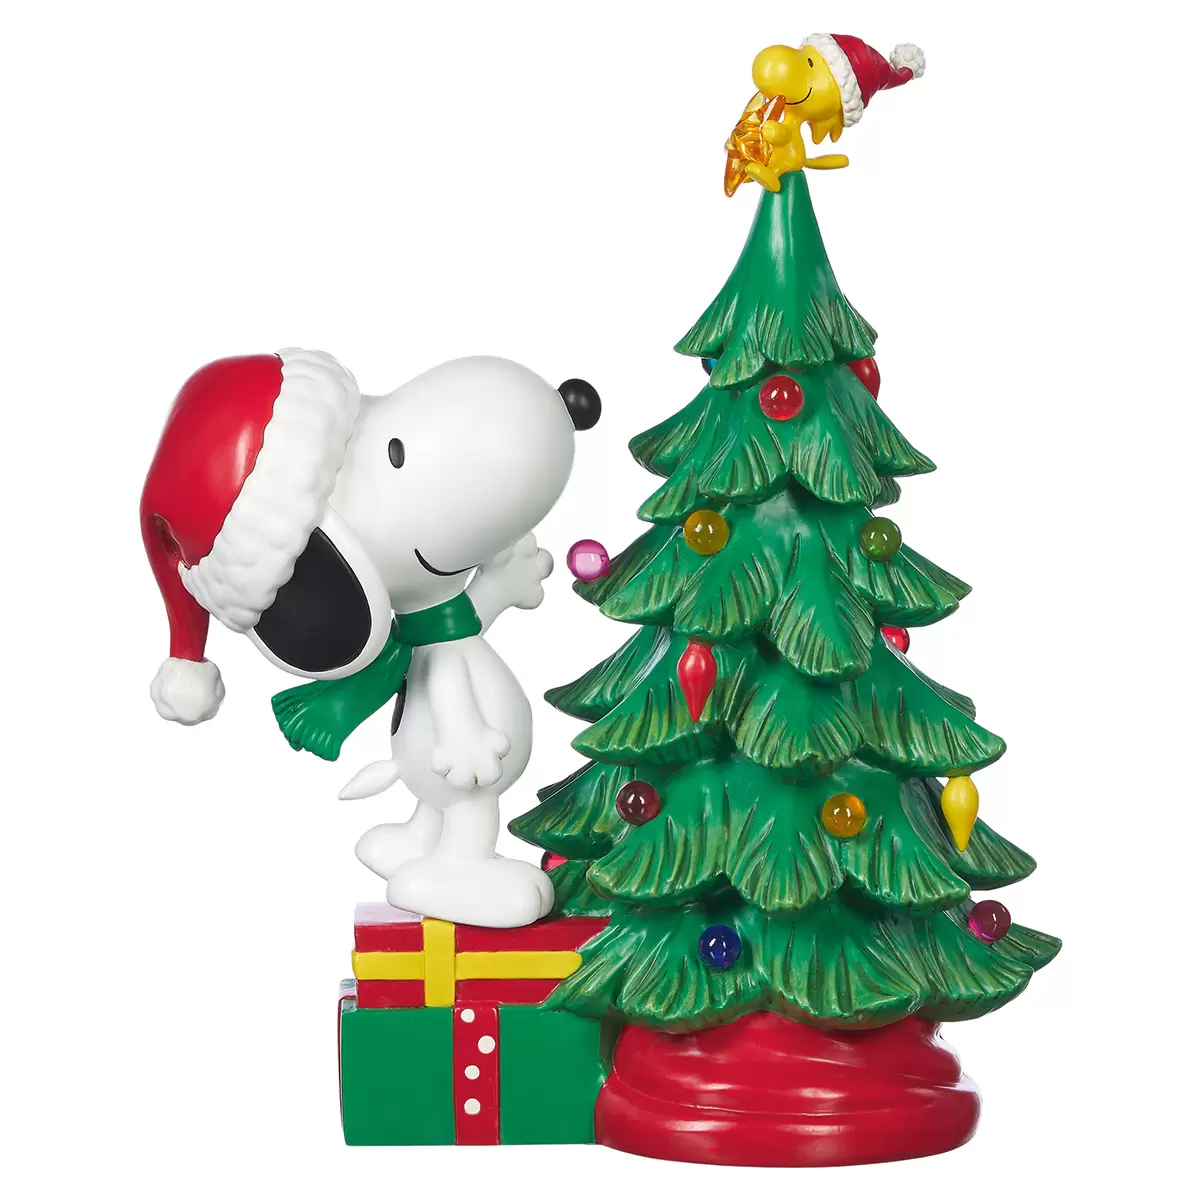 Peanuts Snoopy Christmas Tree Figurine